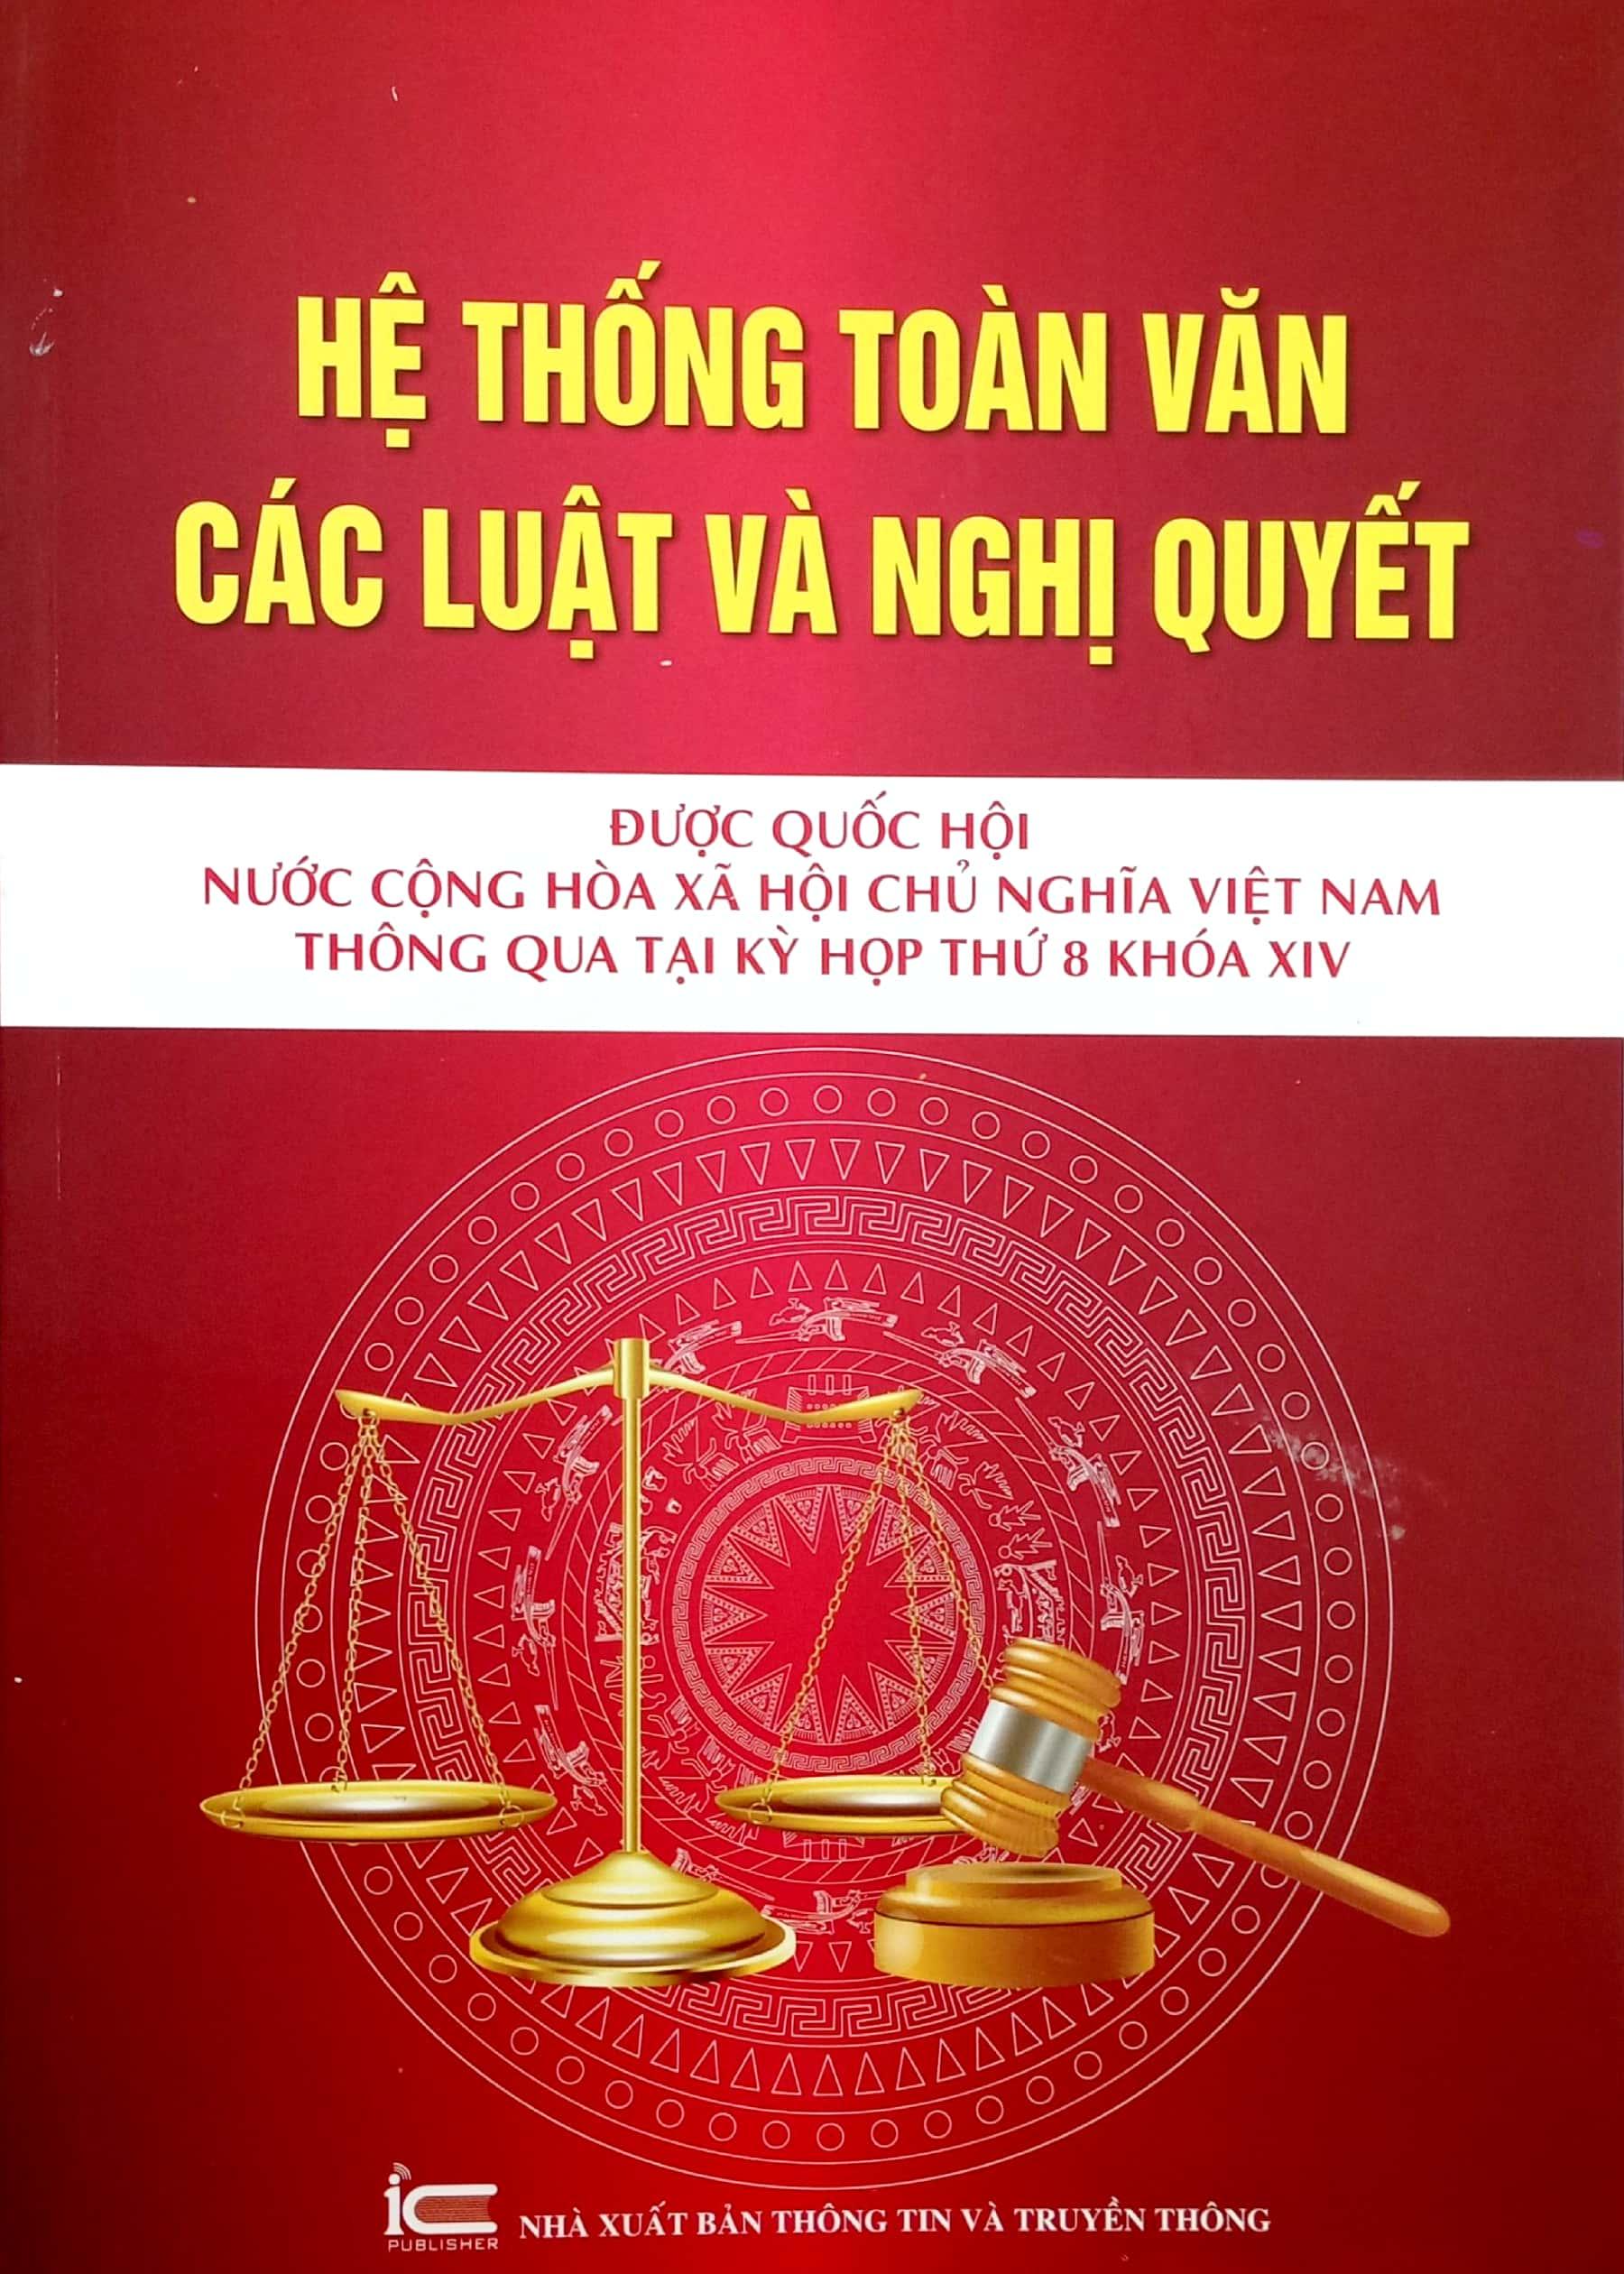 Hệ Thống Toàn Văn Các Luật Và Các Nghị Quyết Được Quốc Hội Nước Cộng Hòa Xã Hội Chủ Nghĩa Việt Nam Thông Quan Tại Kỳ Họp Thứ 8 Khóa XIV